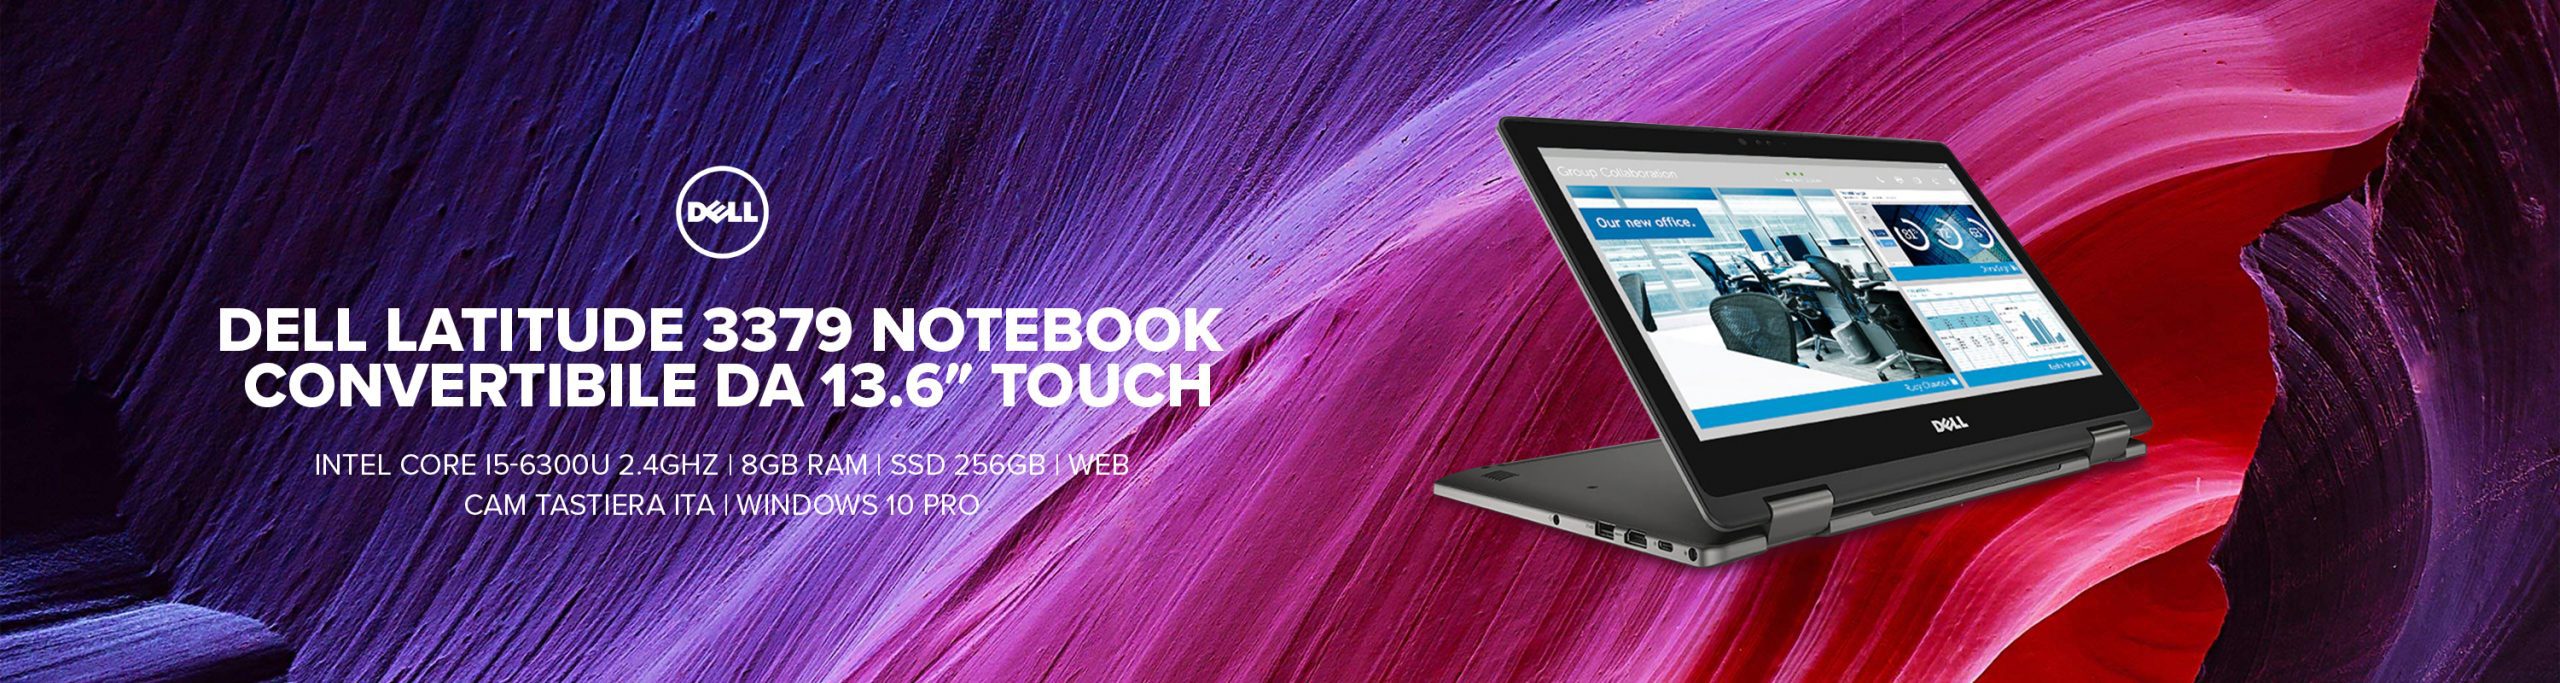 Dell Latitude 3379 Notebook